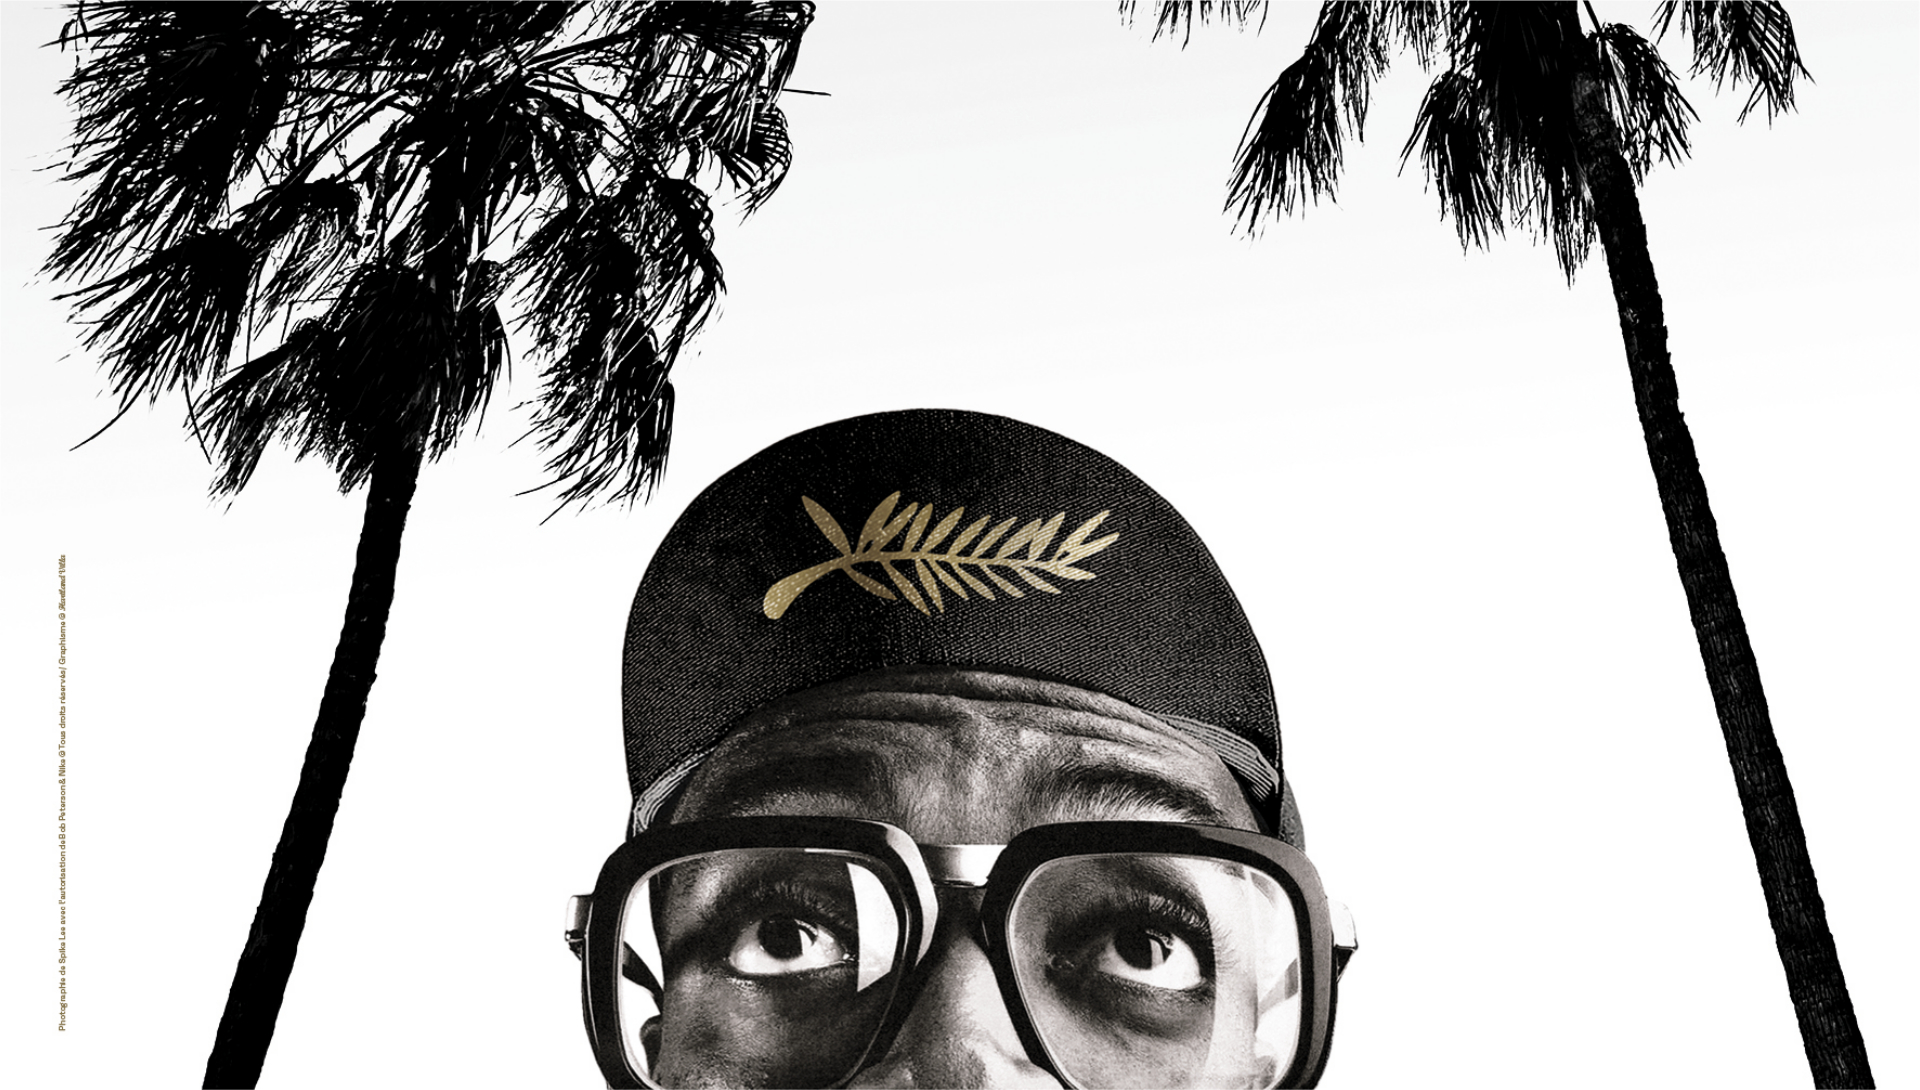 Affiche officielle du 74e Festival de Cannes - Photographie de Spike Lee avec l'autorisation de Bob Peterson et Nike Tous droits réservés - Graphisme